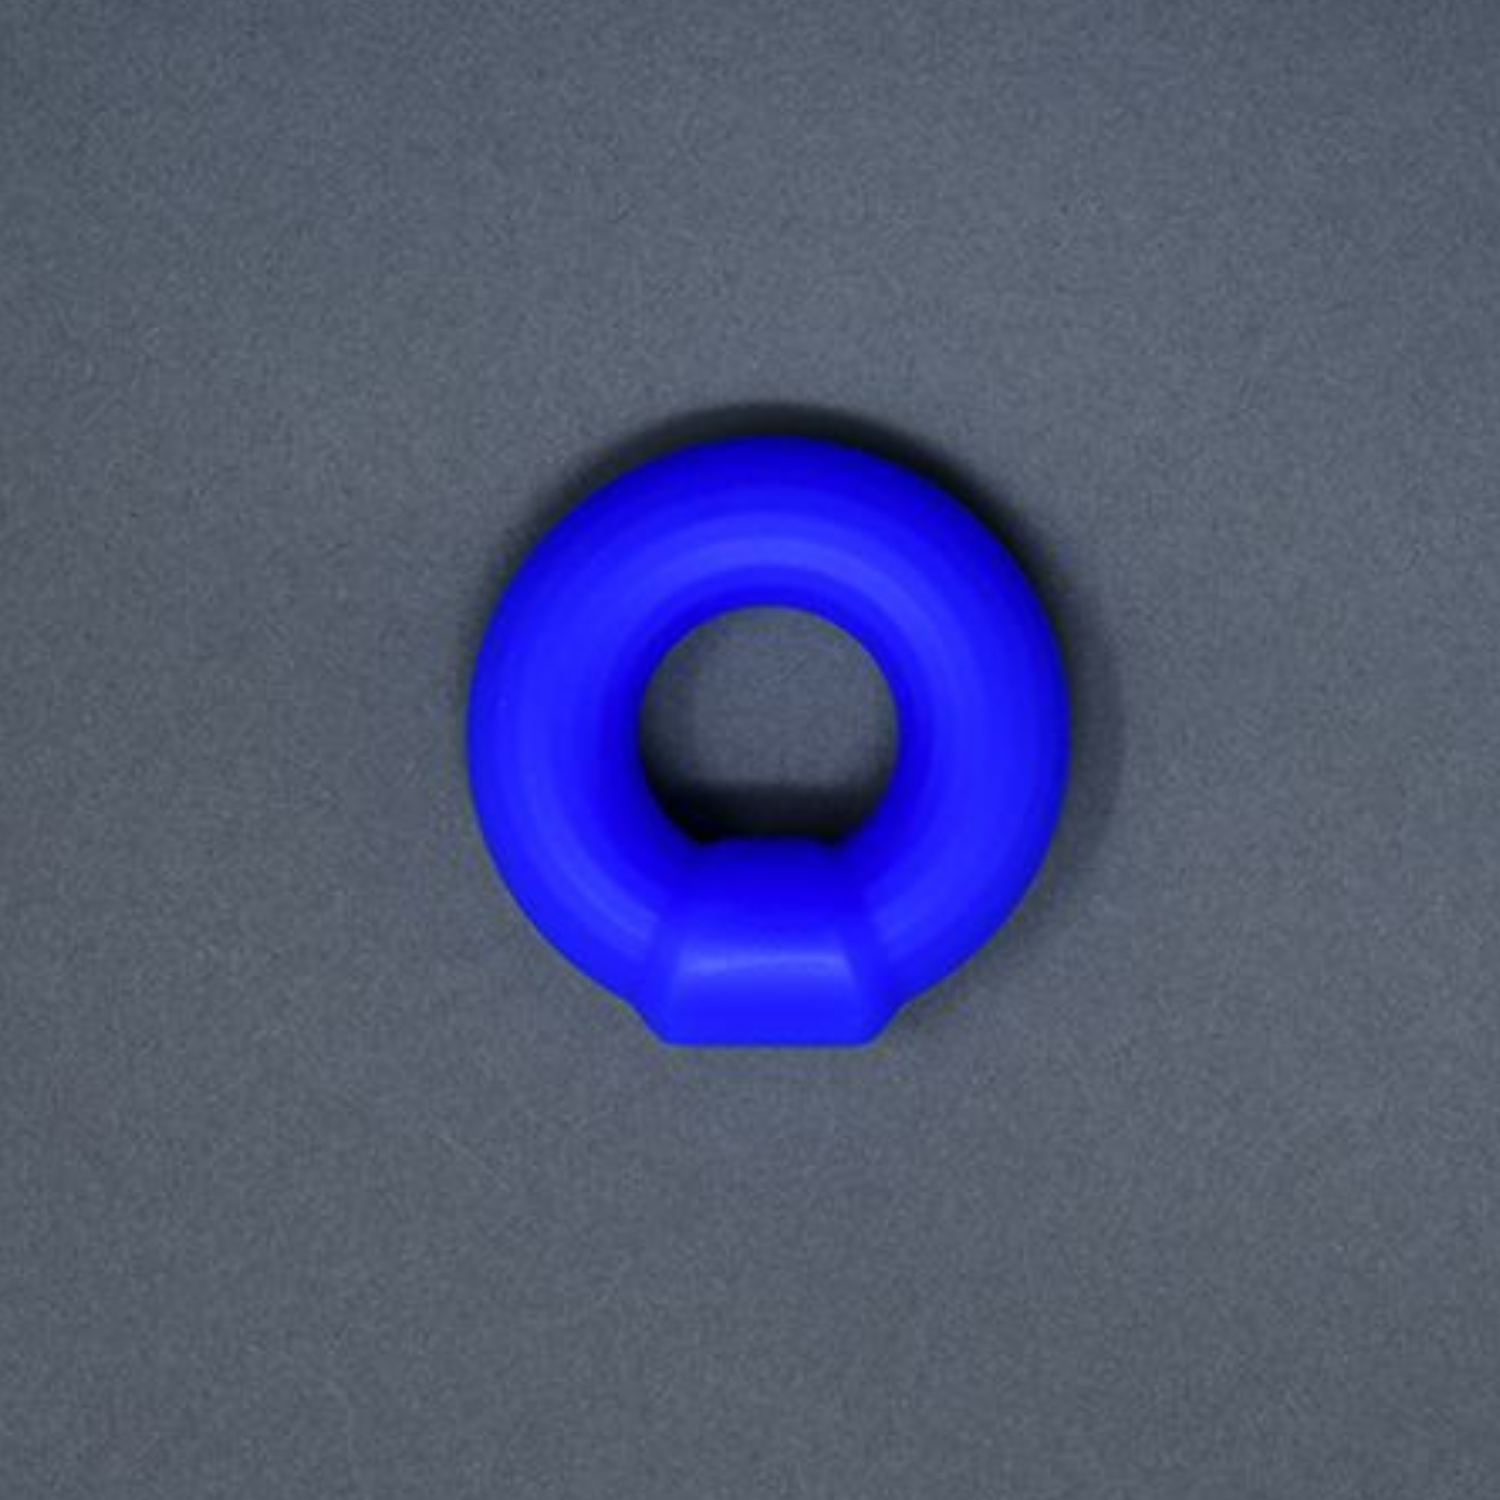 Blauwe anti-rol cock ring ontworpen door Andrew Christian en te koop bij Flavourez.